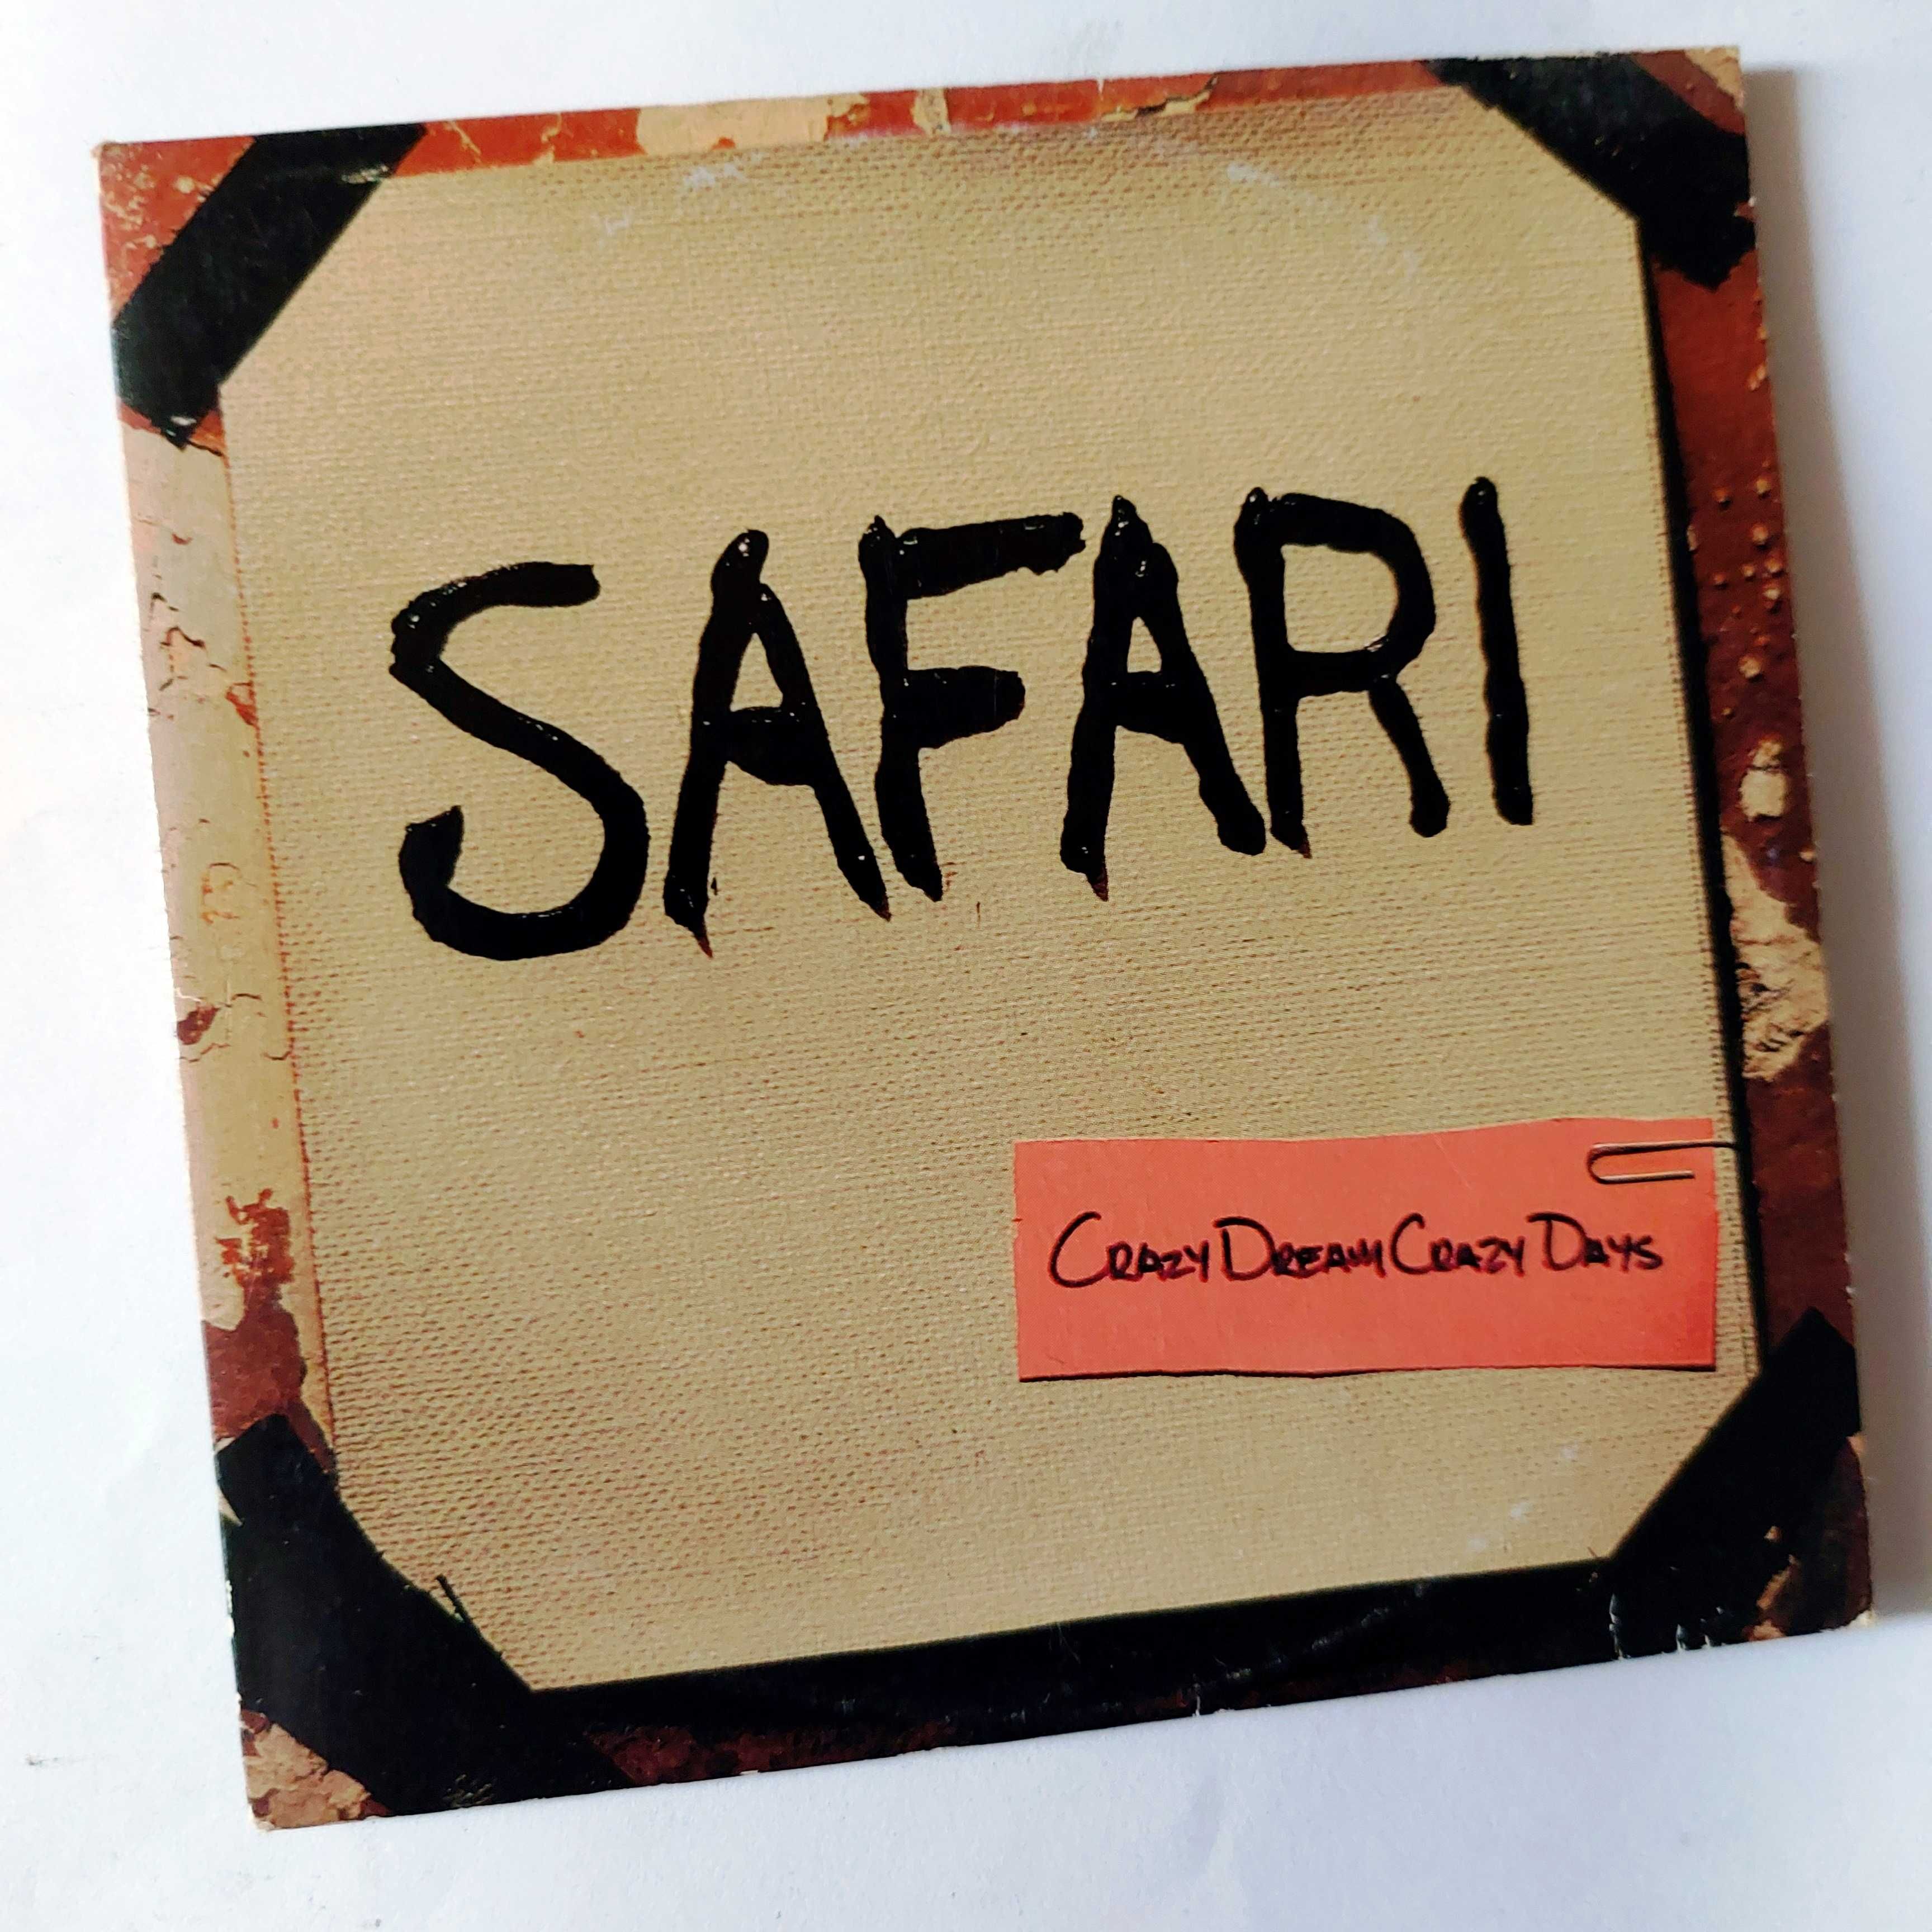 Crazy dream crazy days - Safari | CD